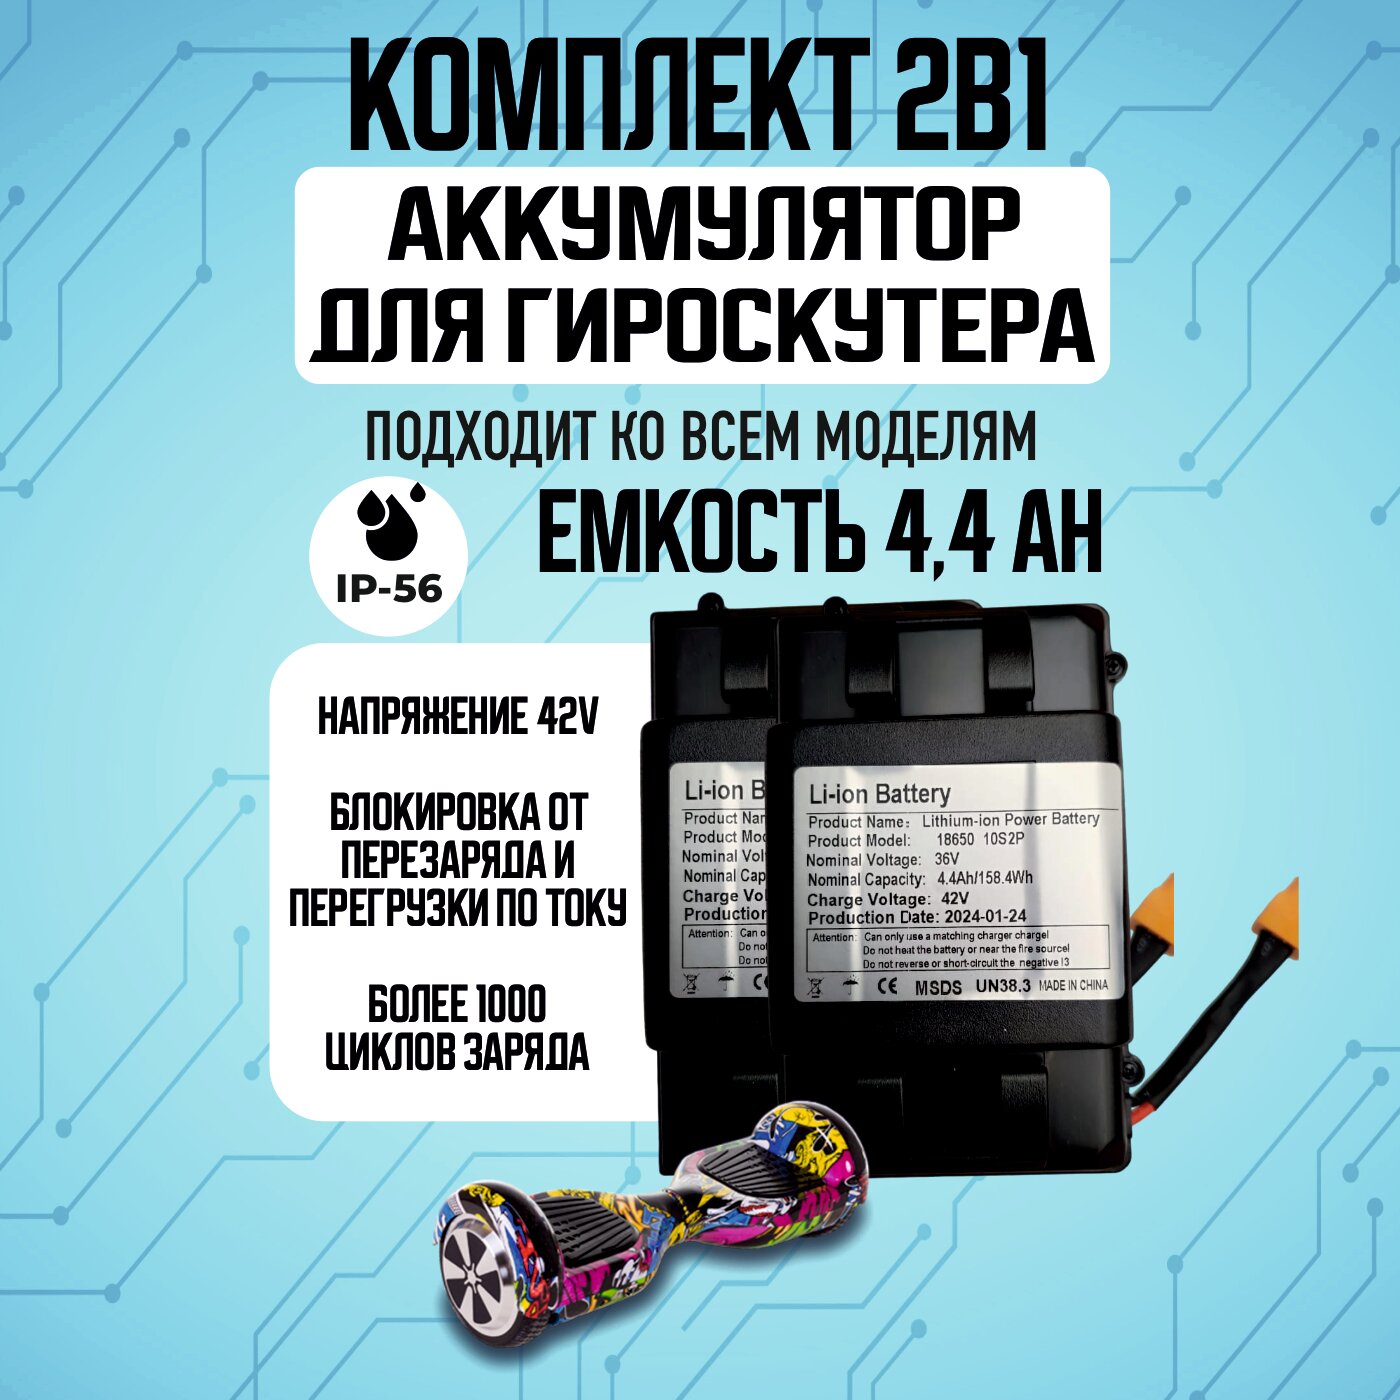 Аккумулятор для гироскутера в корпусе 36 V/4.4 Ah (универсальный) влагозащищенный / замена аккумулятора / аккумуляторная батарея для гироскутера в корпусе - 2 шт